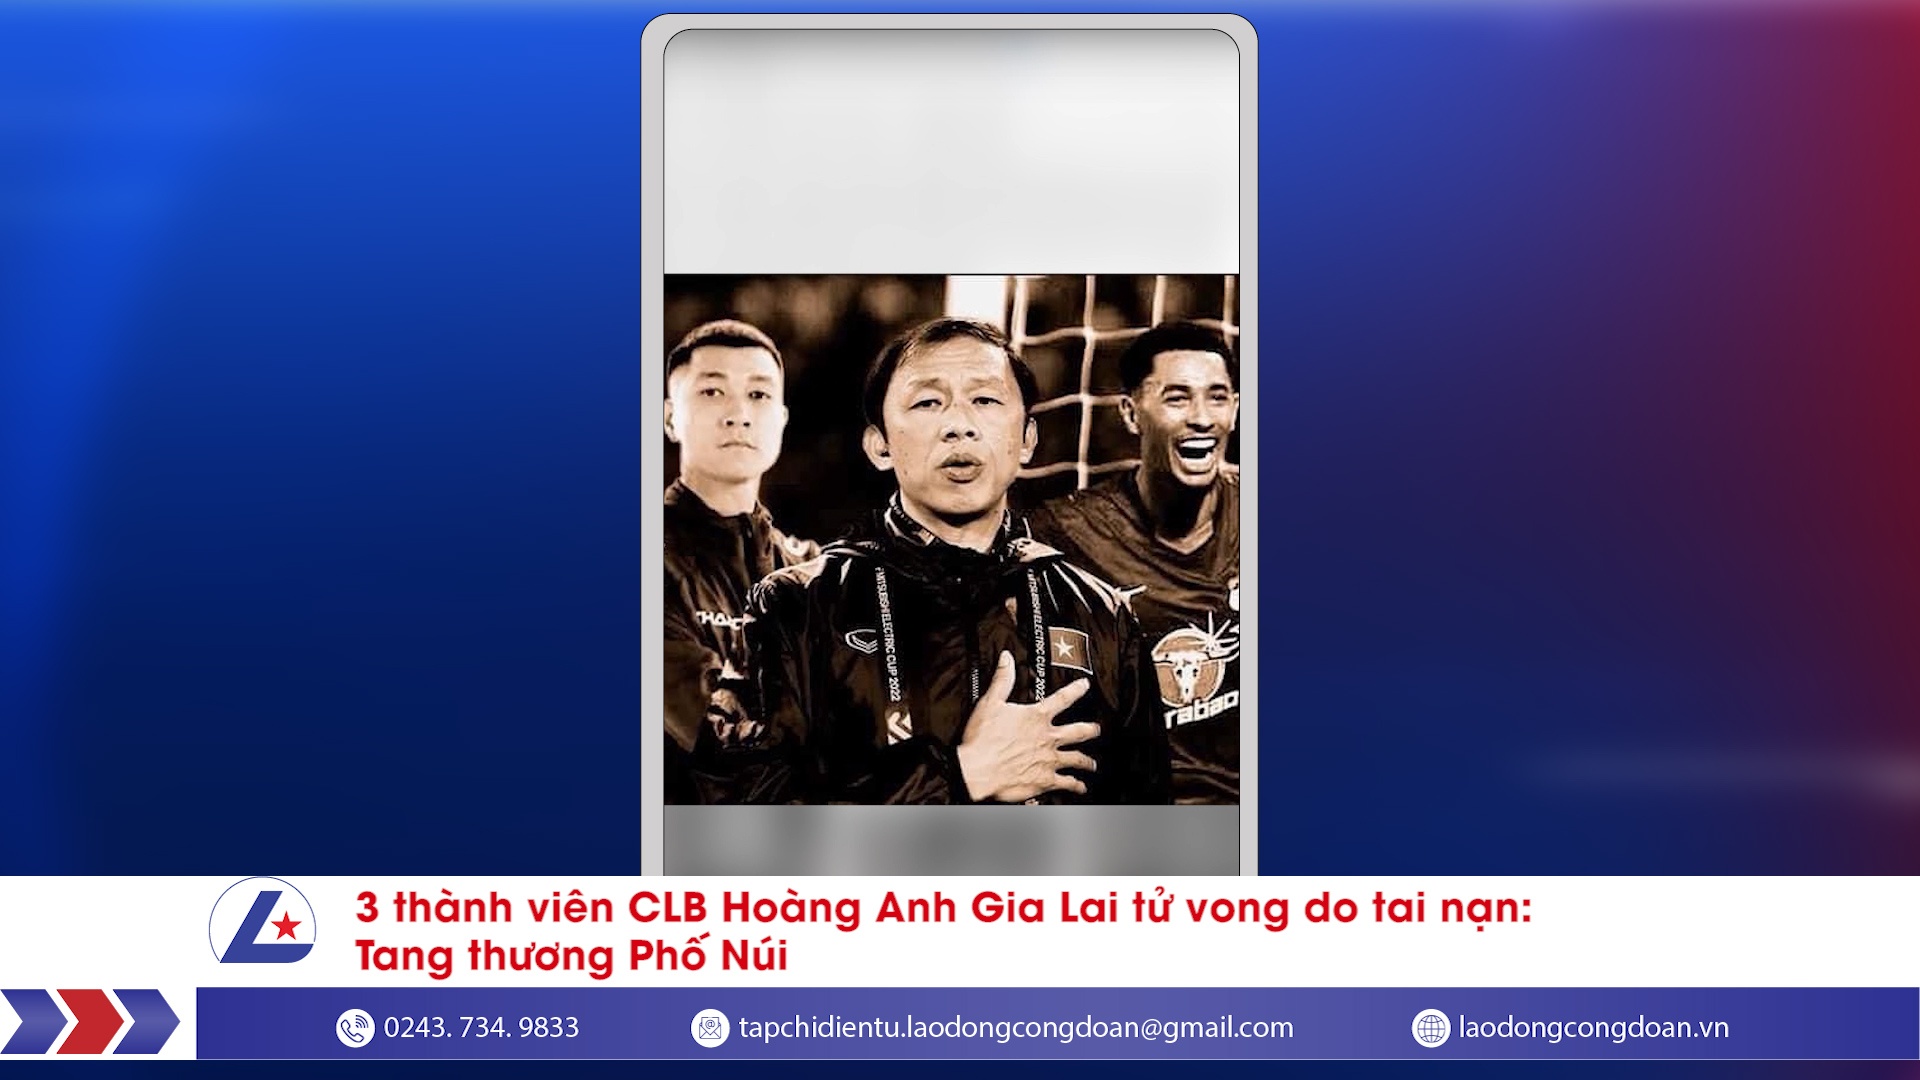 3 thành viên CLB Hoàng Anh Gia Lai tử vong do tai nạn: Tang thương Phố Núi